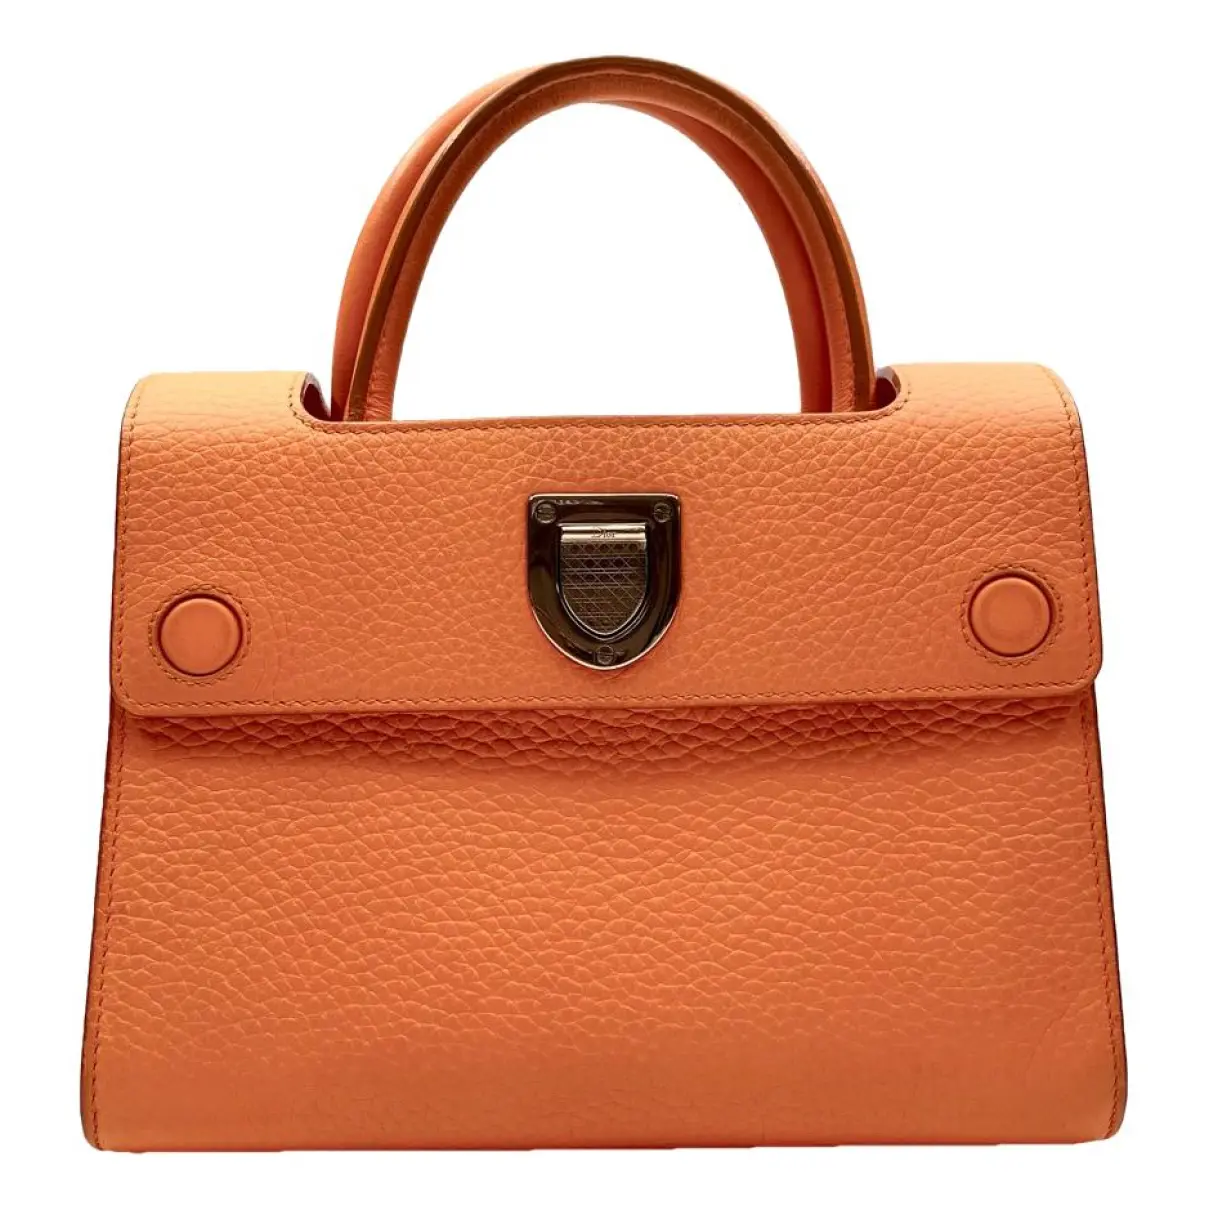 Diorever leather handbag